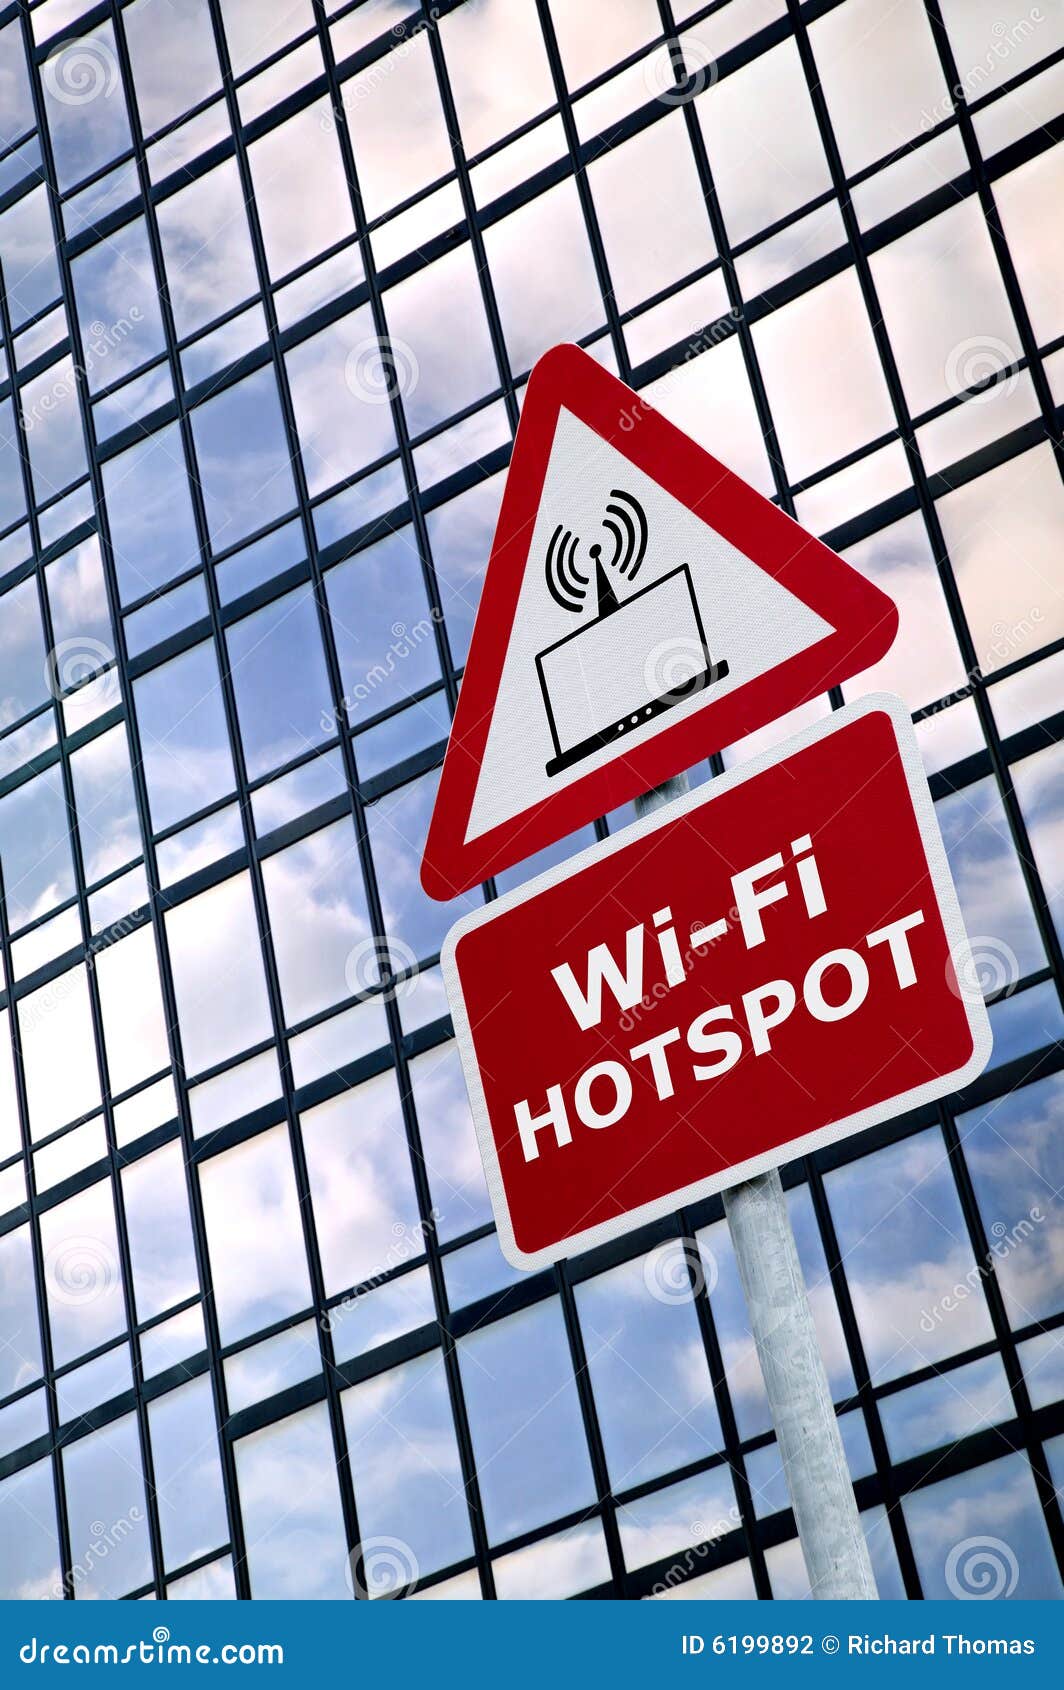 wifi hotspot sign